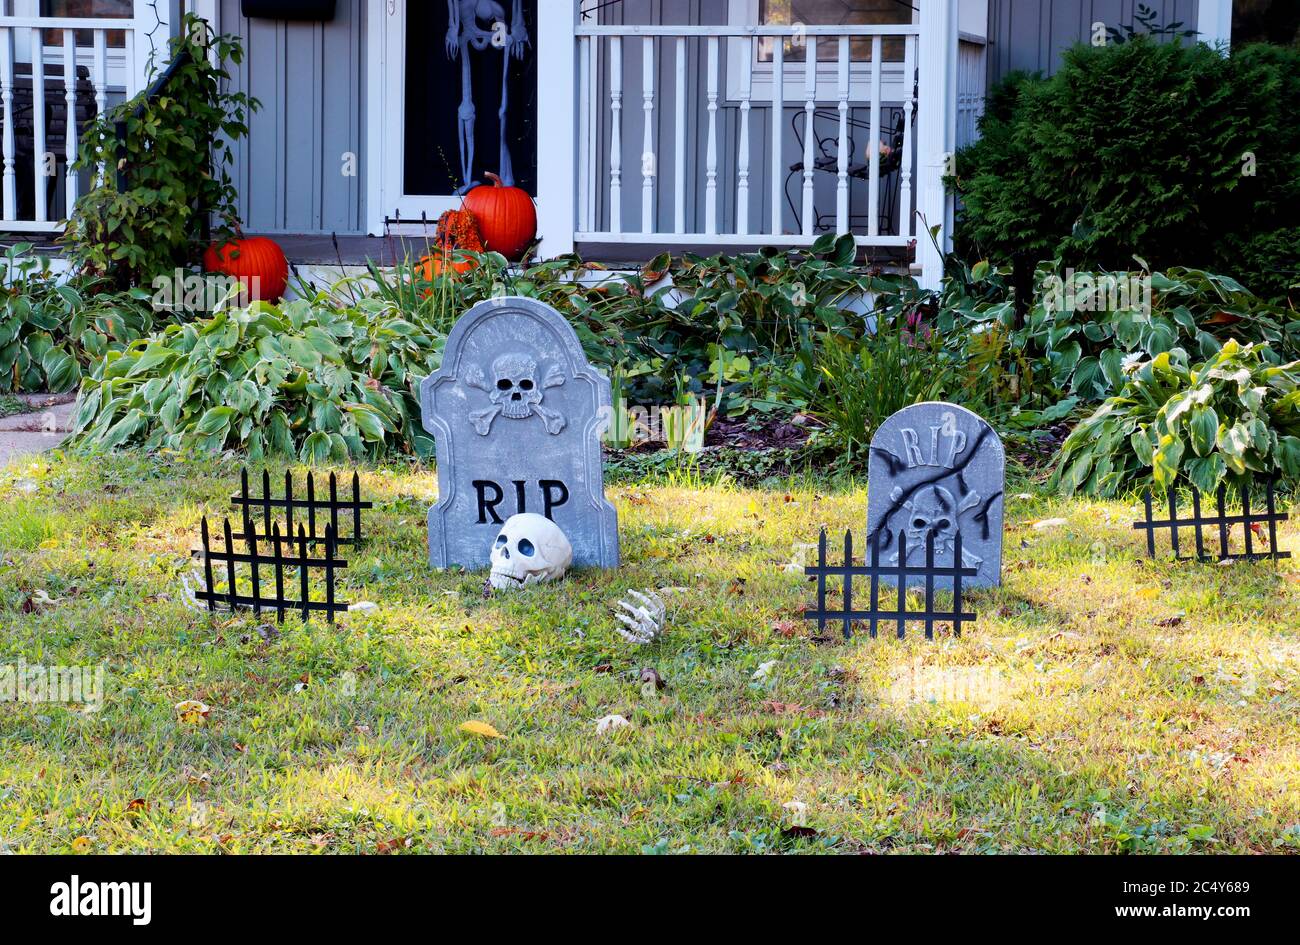 Vorgarten des privaten Hauses mit gefälschten Schädel, Knochen Hände, Grabsteine und Roste, Kürbisse auf der Veranda für eine alte amerikanische Trick-or-Treat Hallo dekoriert Stockfoto